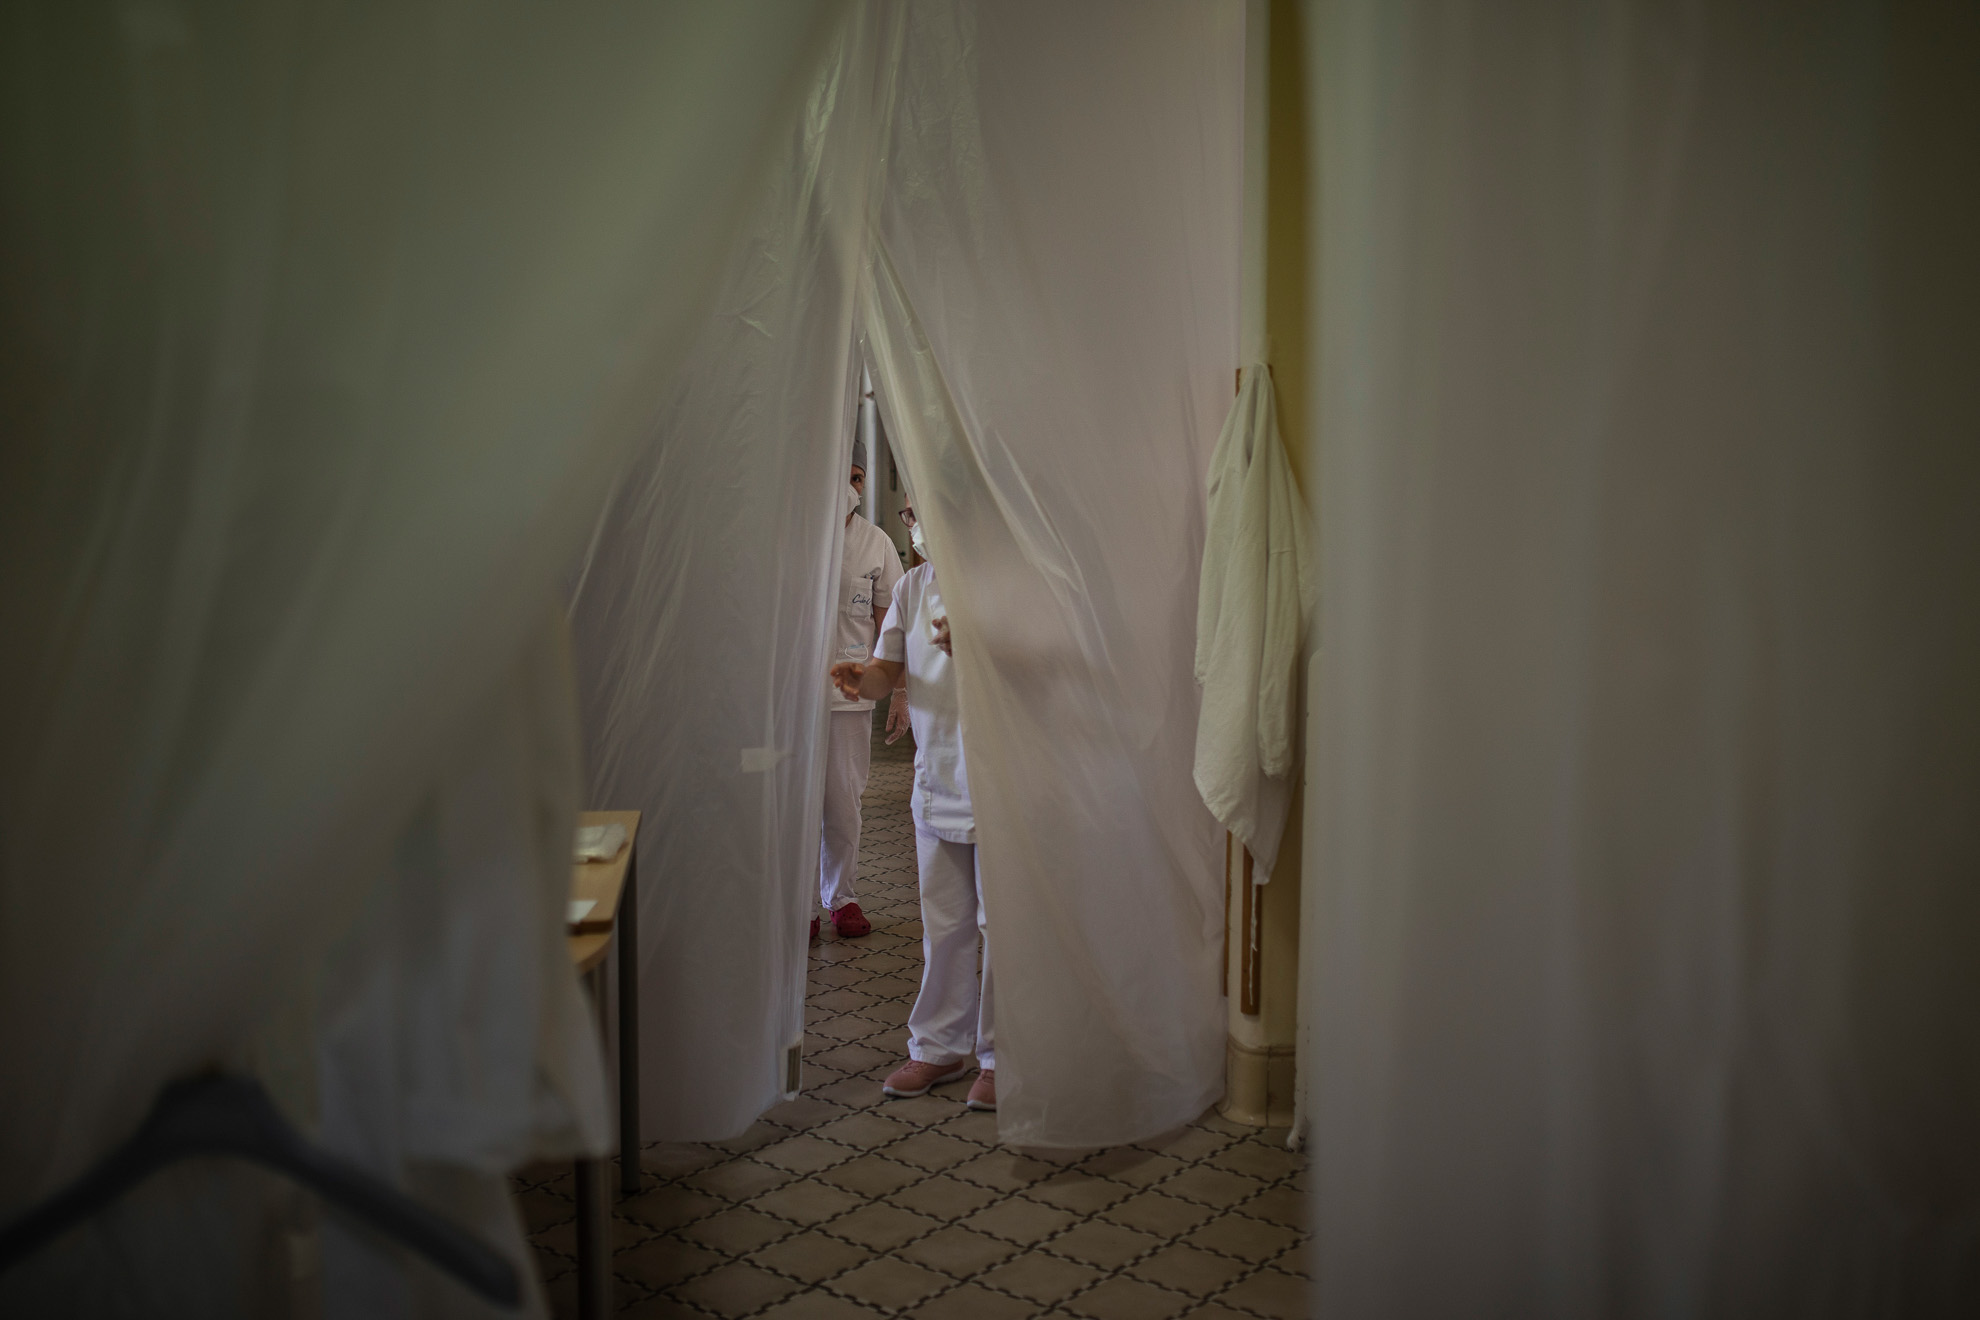 Una enfermera se asoma al interior de una residencia a través de unas cortinas colocadas como protección frente al coronavirus, en la provincia de Barcelona, España, 14 de abril, 2020.